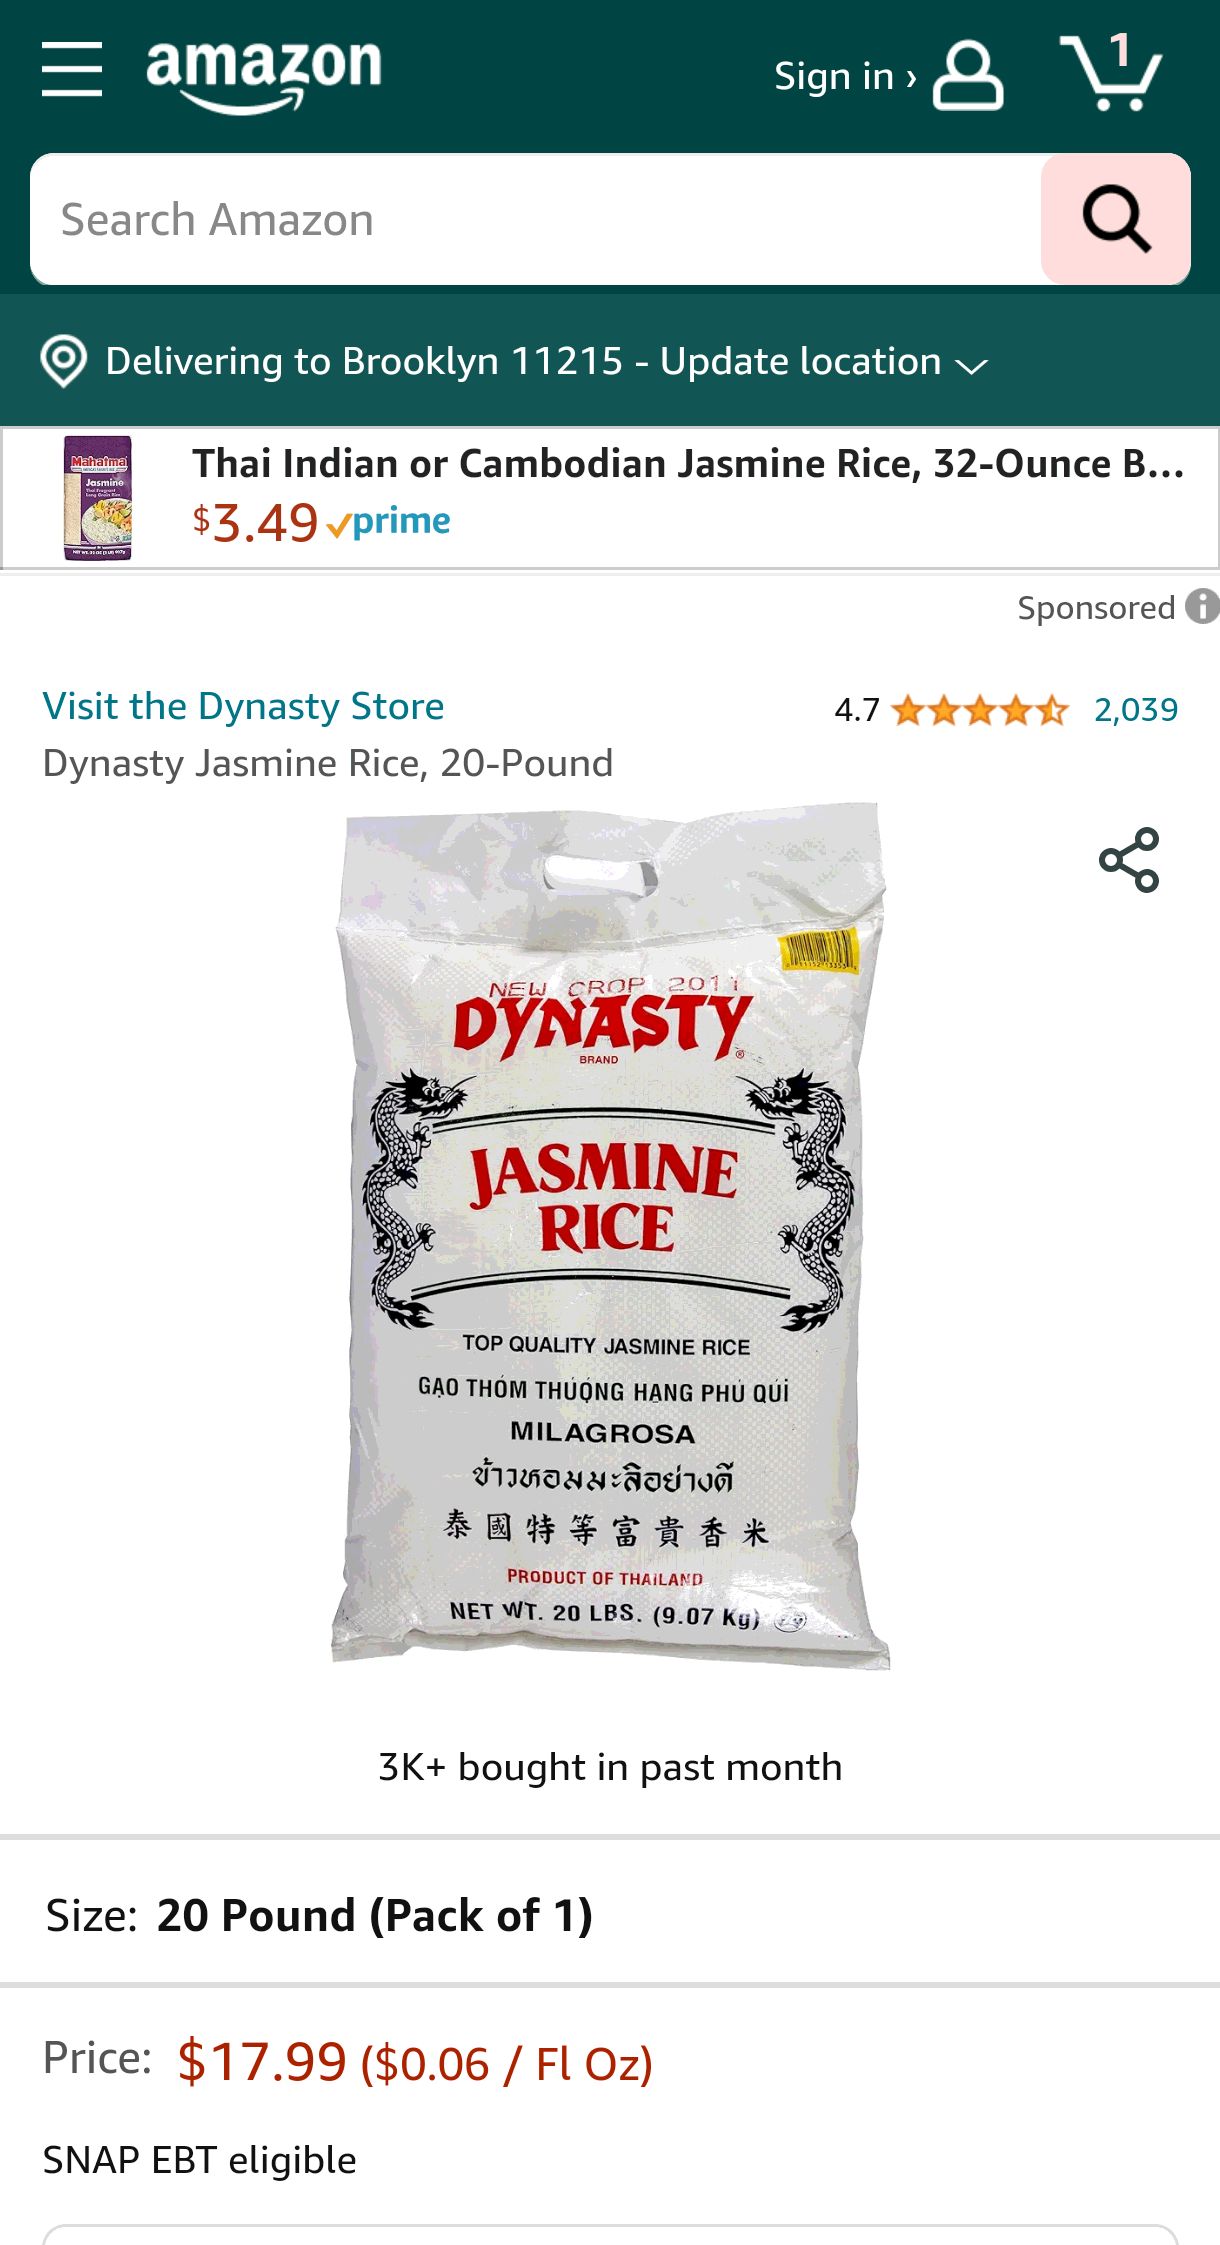 Amazon.com : Dynasty Jasmine Rice, 20-Pound : Dried Jasmine Rice : Grocery & Gourmet Food